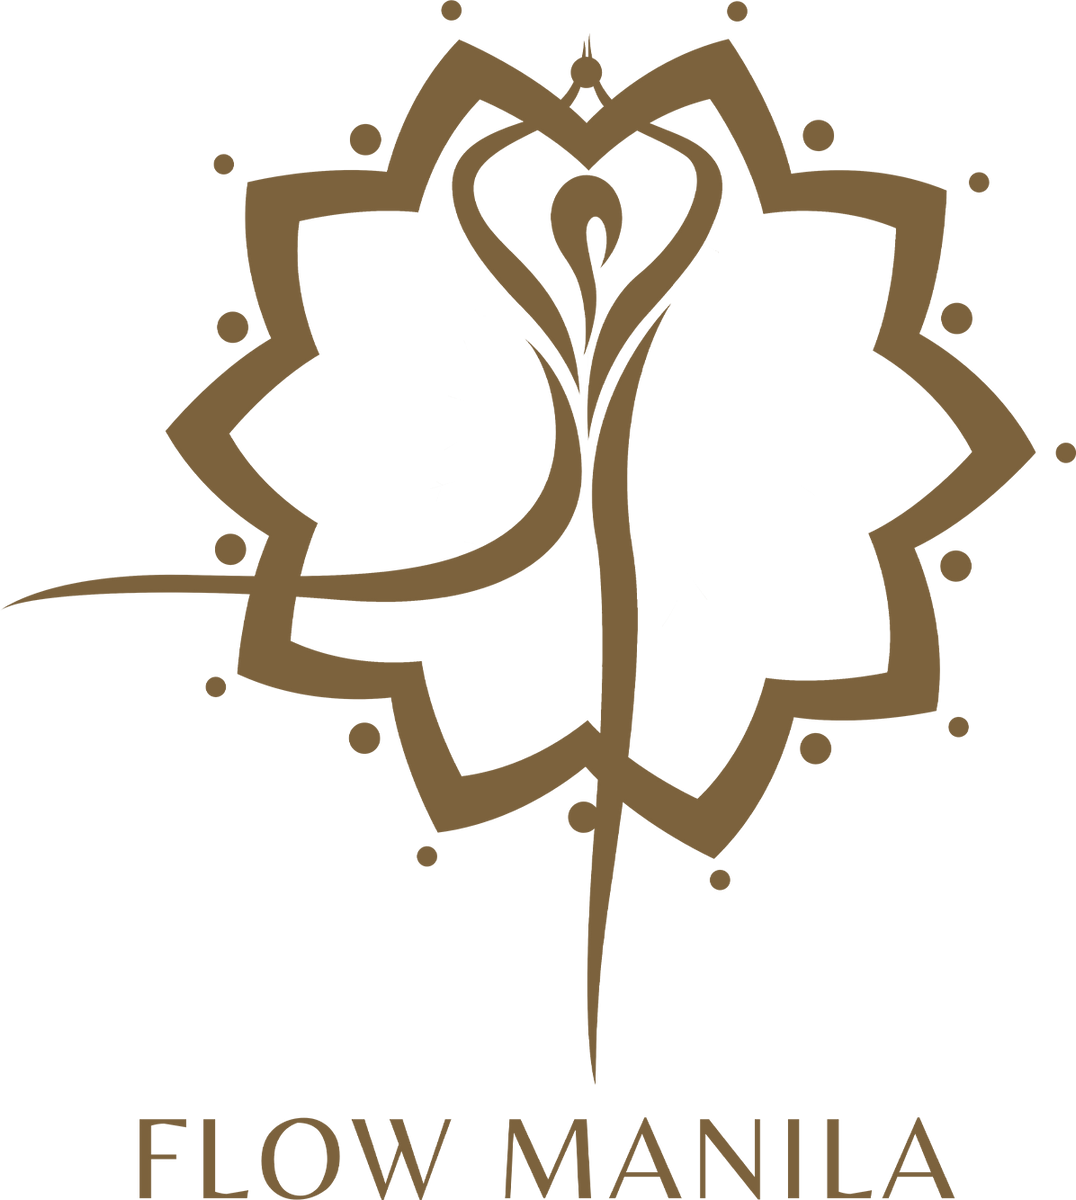 Flow Manila– FLOW MANILA